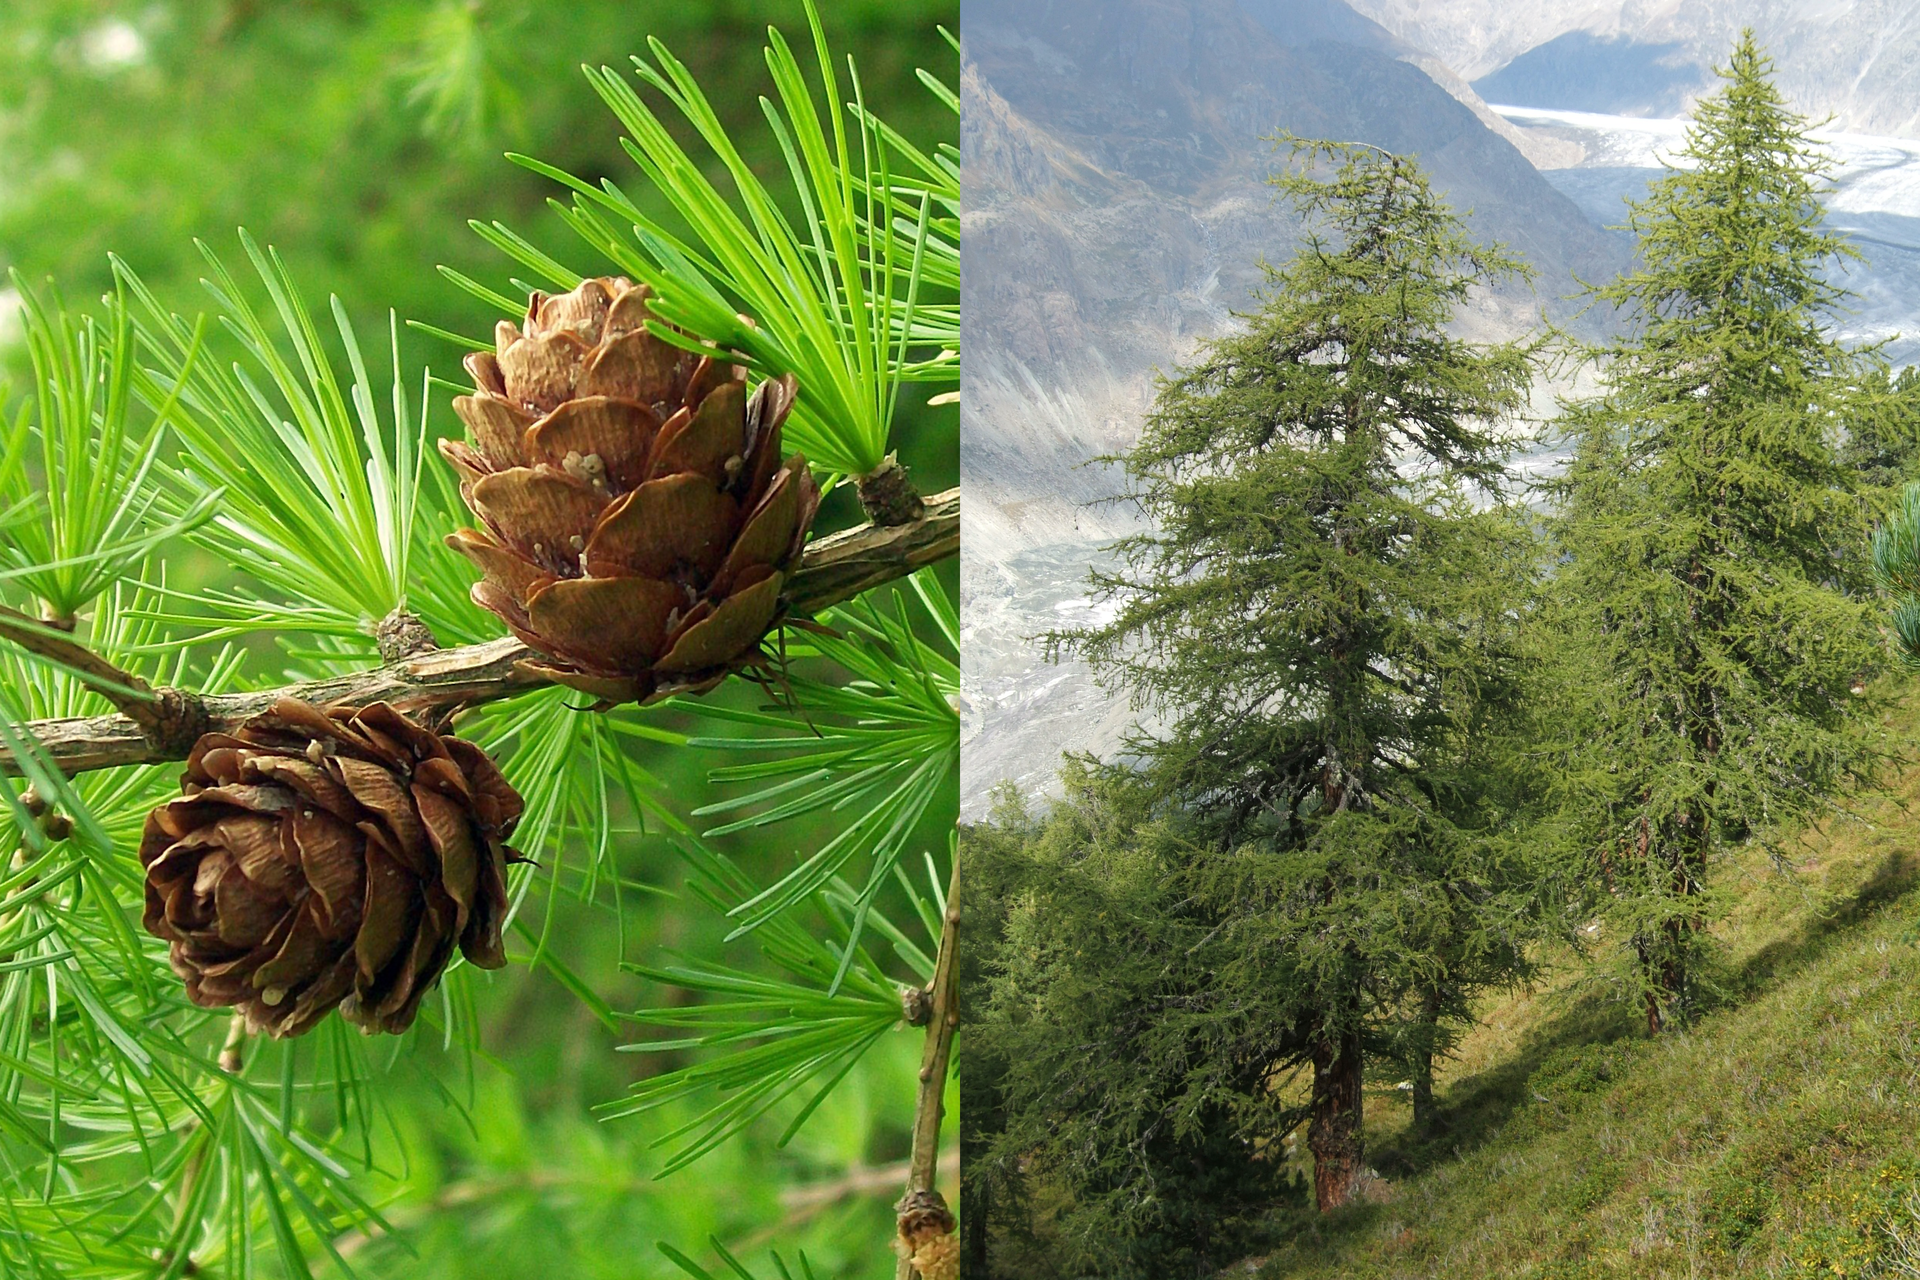 Fotografia z lewej przedstawia gałąź modrzewia europejskiego z krótkimi igłami w pęczkach. Na gałęzi stoją dwie małe, okrągłe brązowe szyszki. Po prawej fotografia przedstawia dwa duże drzewa na tle górskiego krajobrazu.